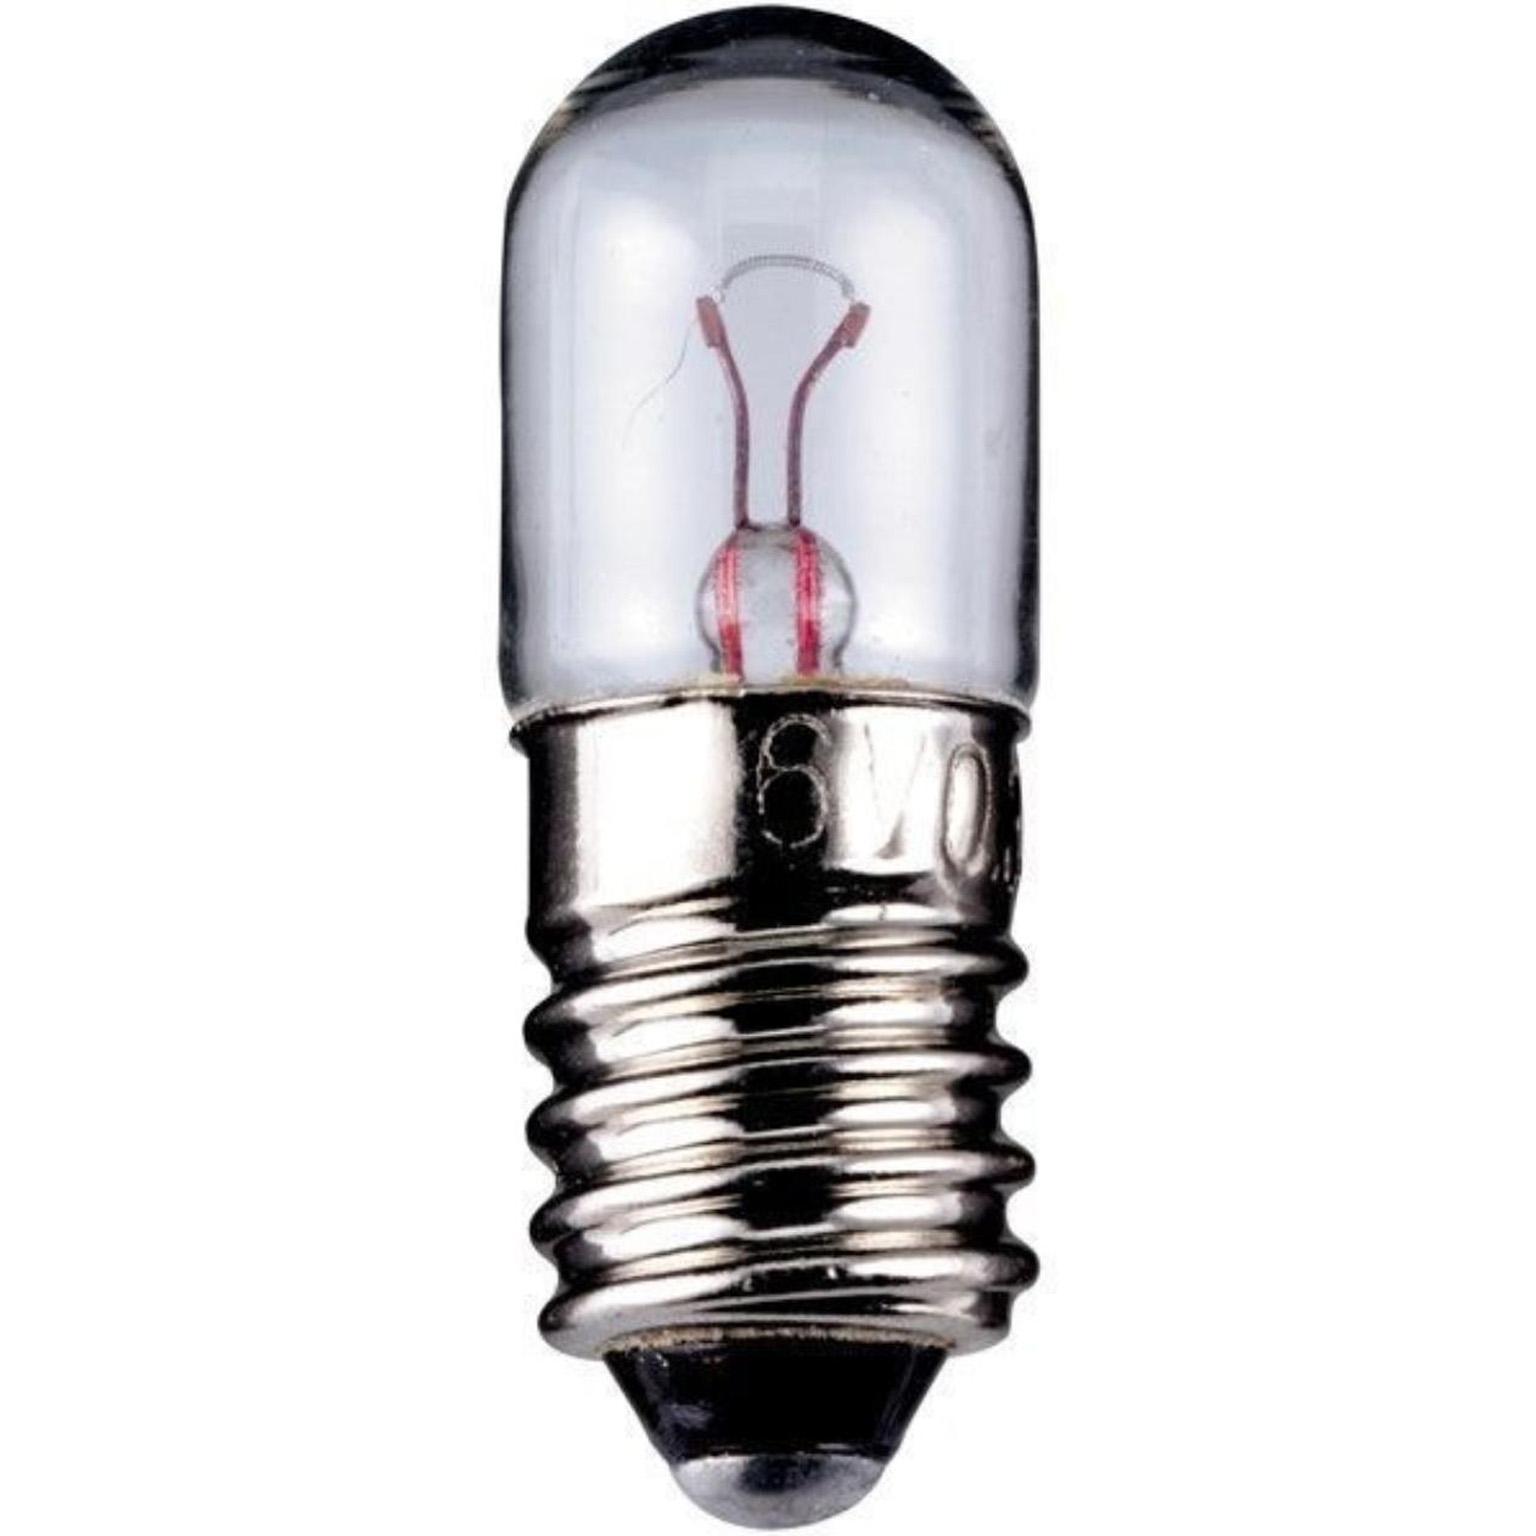 Lamp - Gloeilamp - Signaallamp, Lamptype: Gloeilamp, E10, Vermogen: Watt, Spanning: 6.3 Volt, Lichtkleur: Koud wit, Verpakt per 10